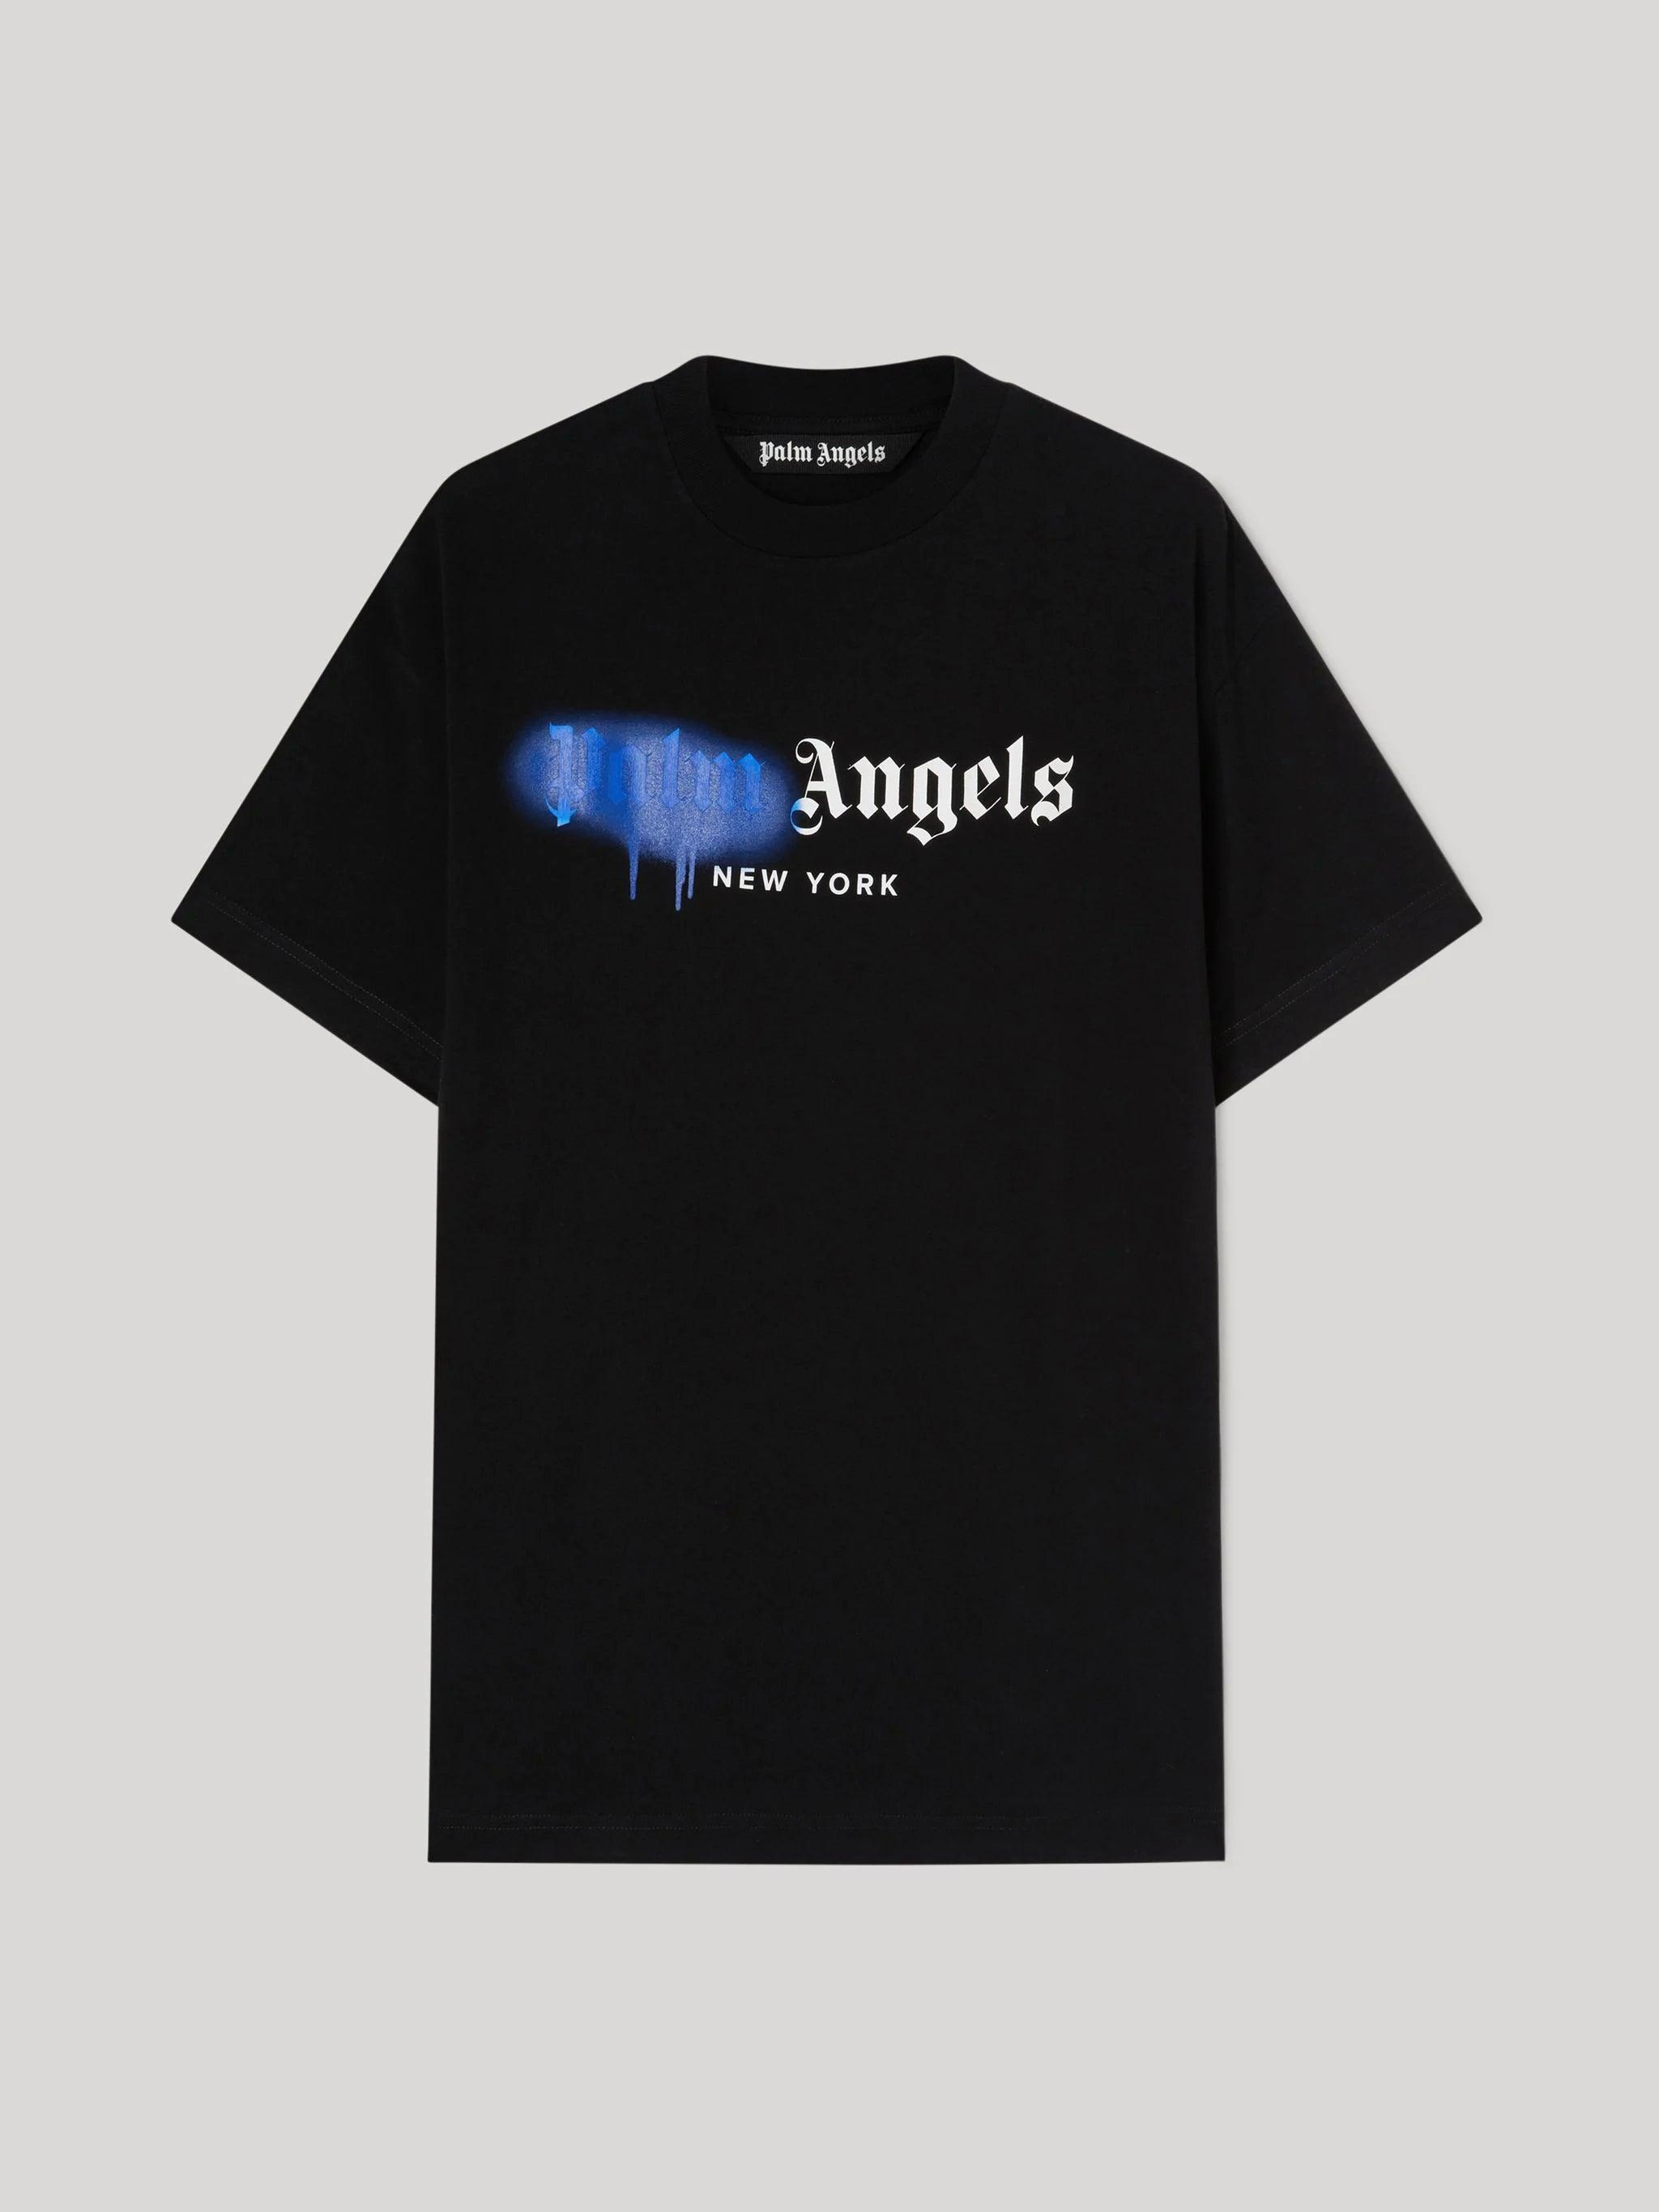 Palm Angels Black Blue New York T-shirt – SneakCenter